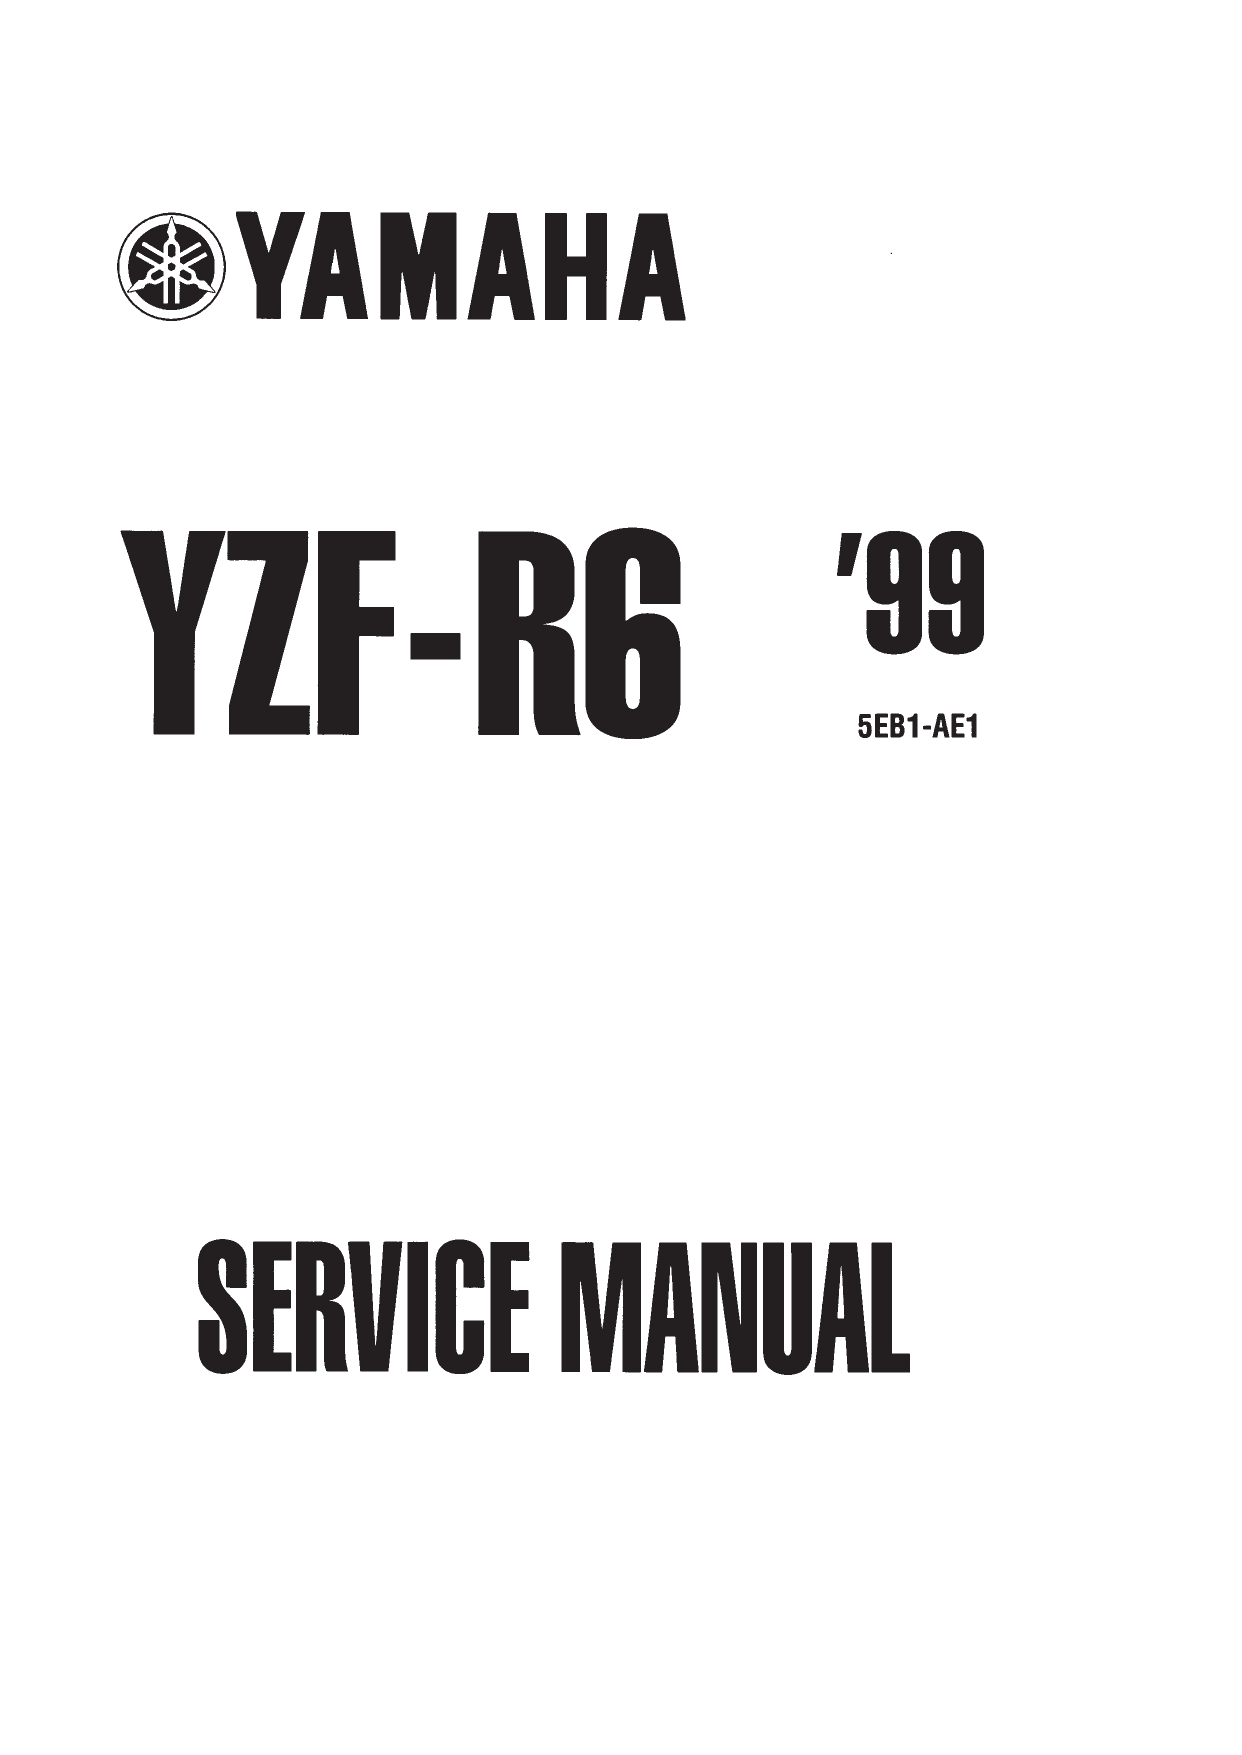 1998-2002 Yamaha YZF-R6 repair manual Preview image 1